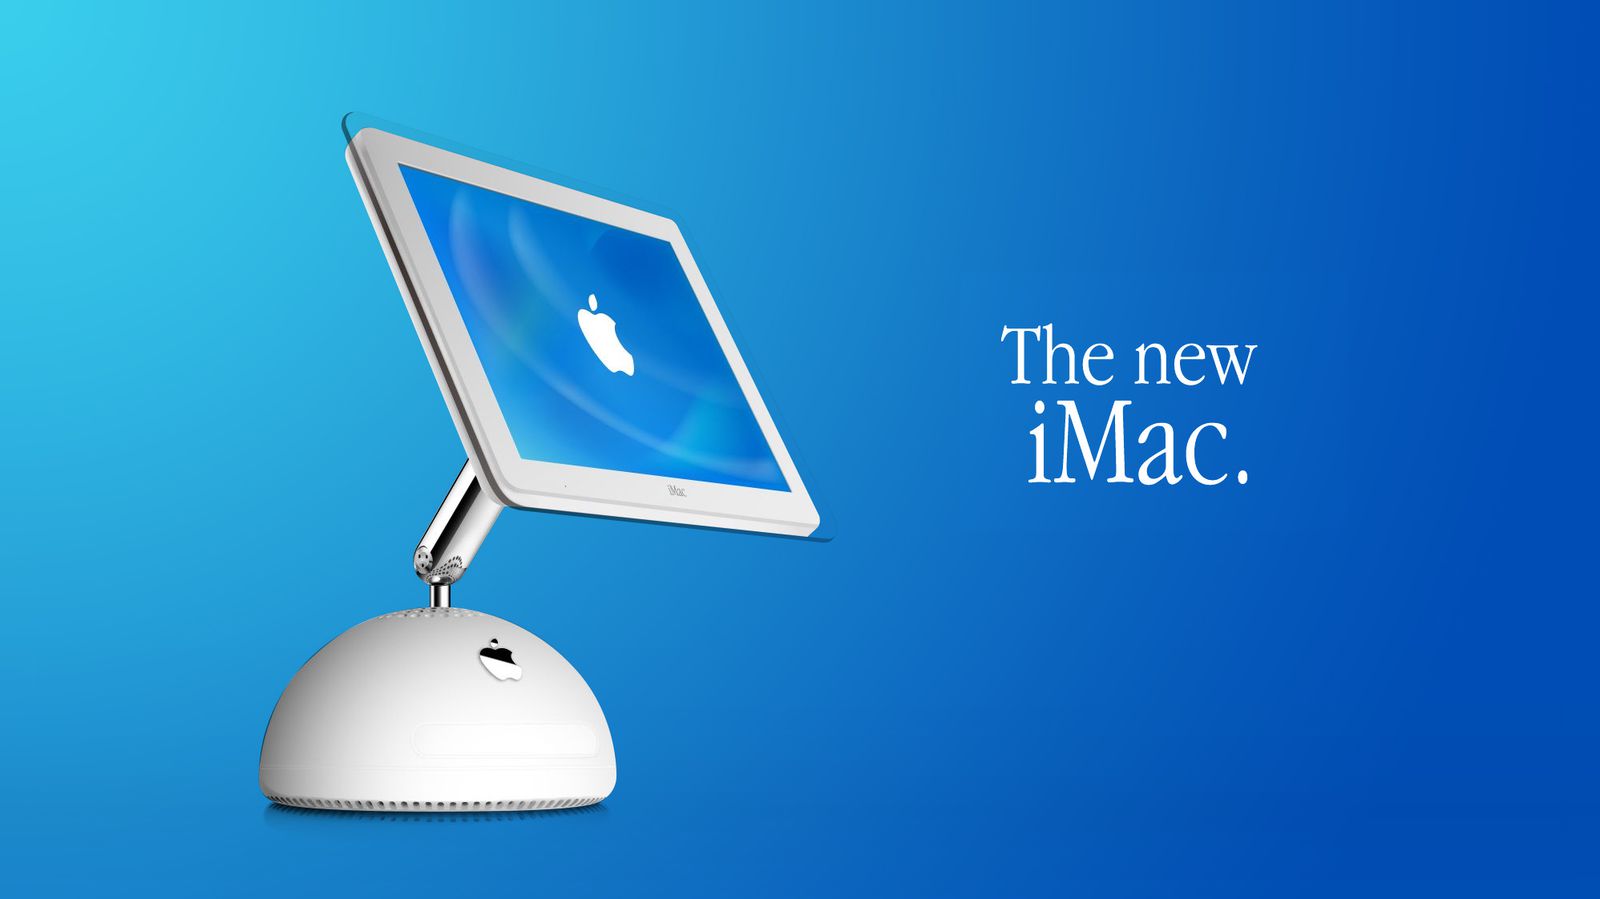 Apple iMac G4 (2002) – Westport Tech Museum